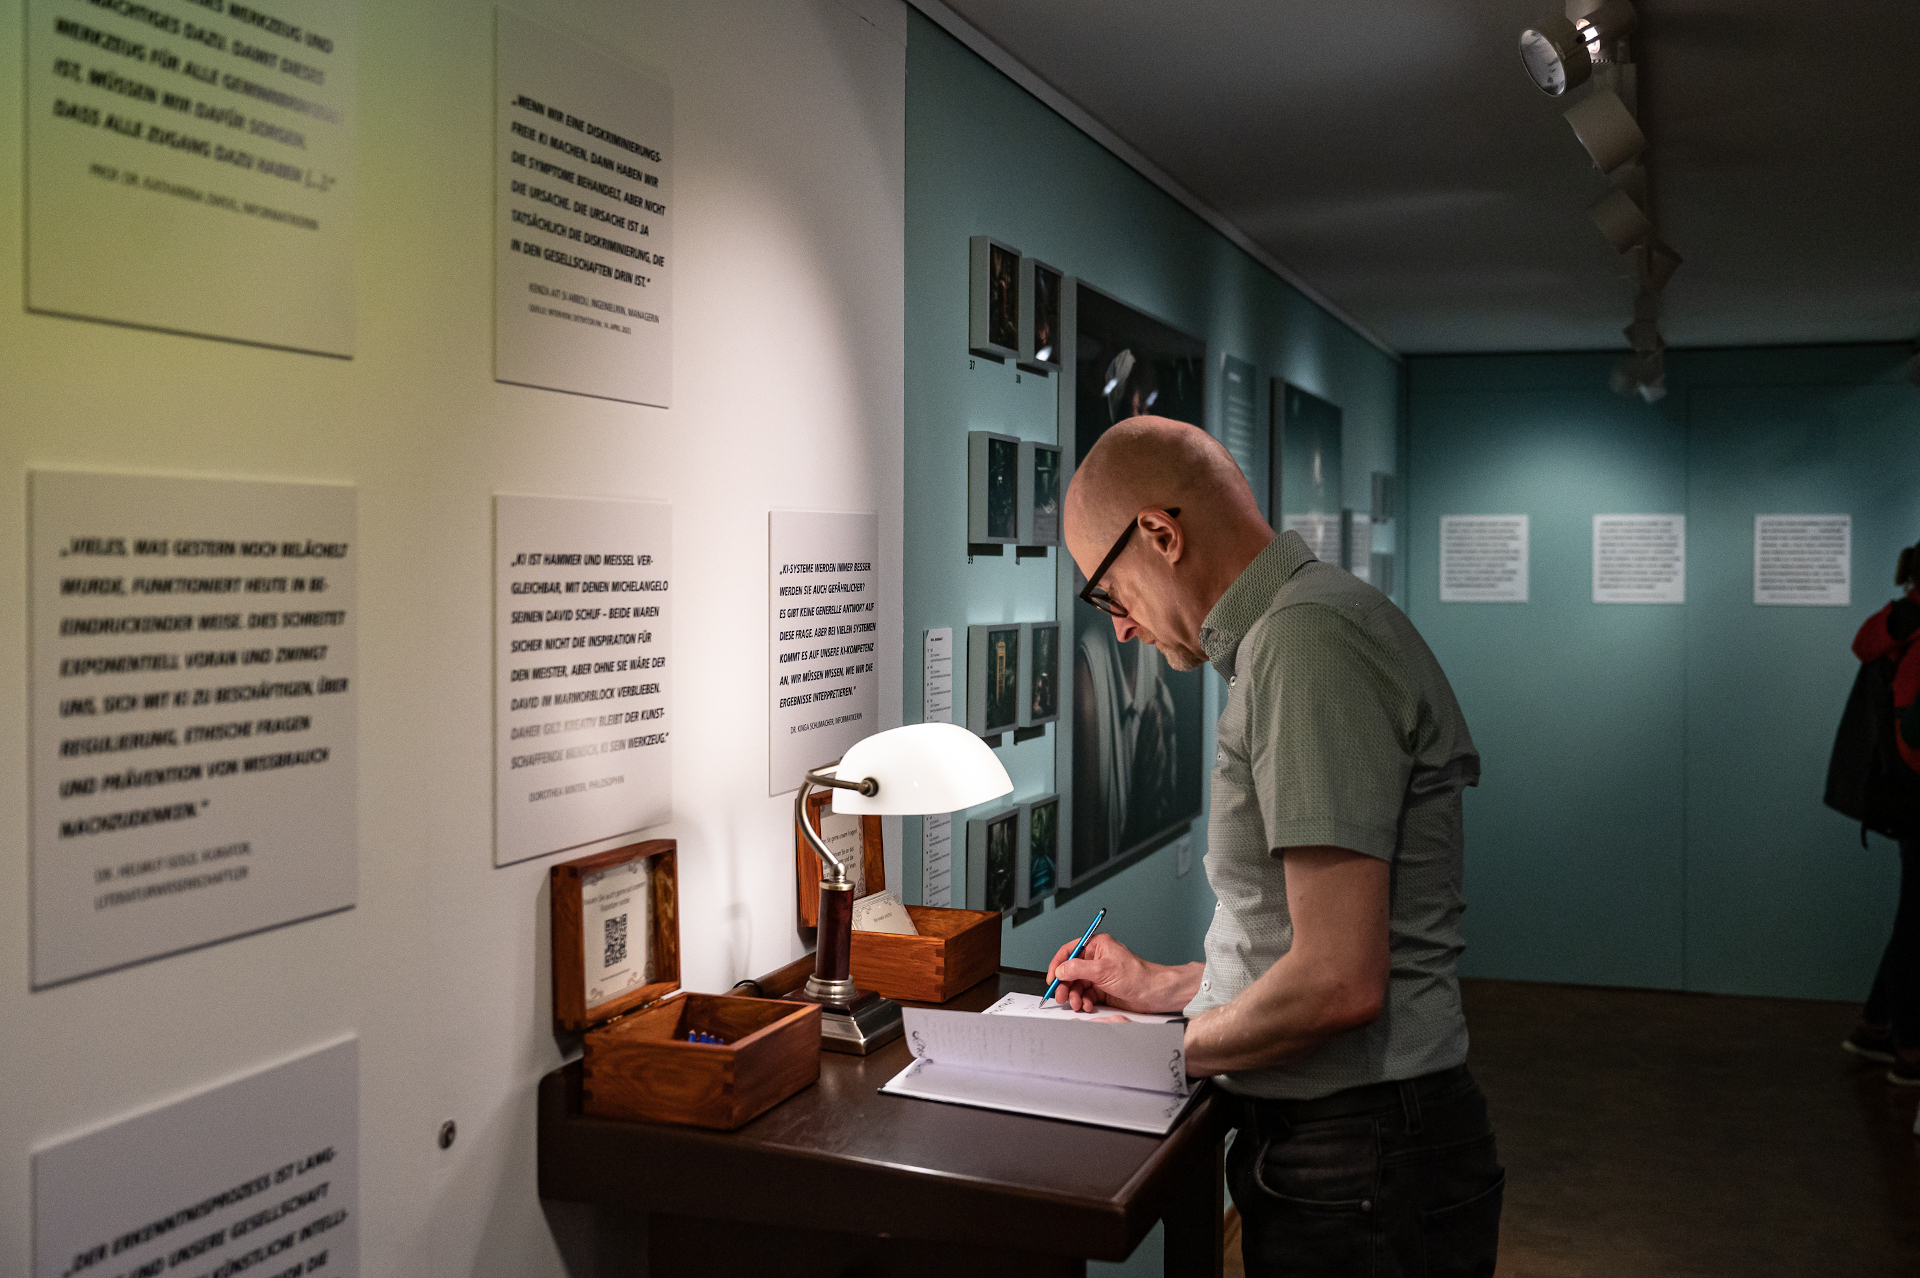 Blick in die Ausstellung "New Realities - Wie Künstliche Intelligenz und abbildet" im Museum für Kommunikation Nürnberg. Ein Besucher schreibt seine Gedanken zu Künstlicher Intelligenz auf einen Zettel für das Visitor Board